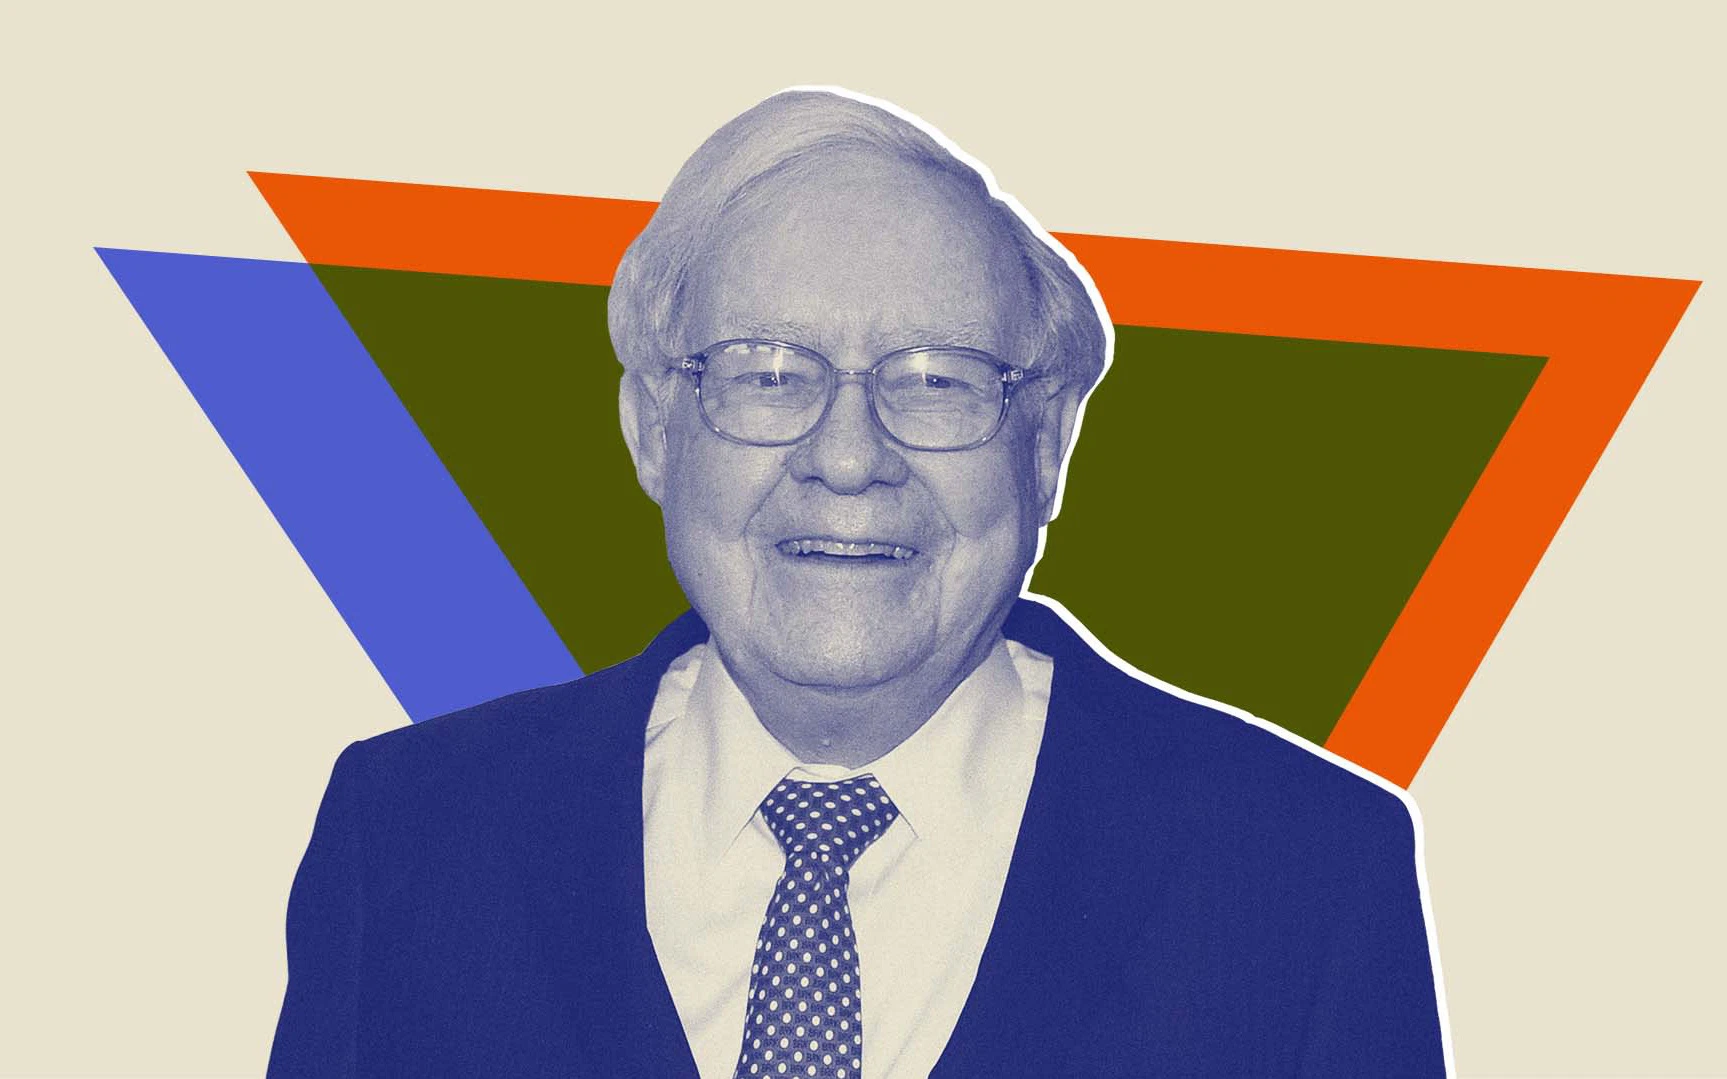 Công thức làm giàu của 'thần chứng khoán' Warren Buffett: Hoá ra chỉ cần áp dụng 3 thói quen đơn giản nhưng không phải ai cũng đủ kiên trì